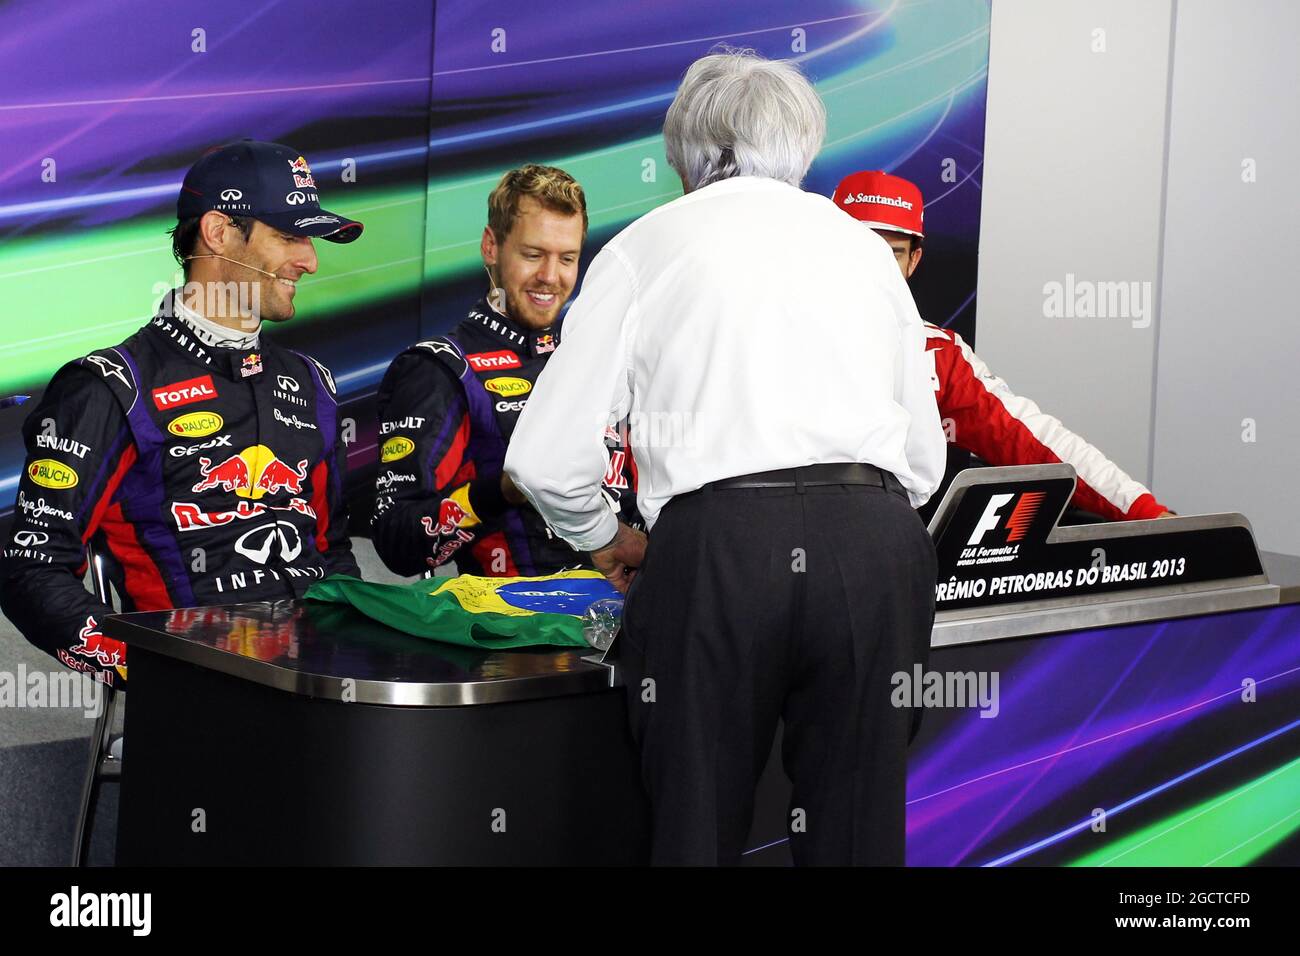 Bernie Ecclestone (GBR) il CEO di Formula One Group (FOM) presenta una bandiera brasiliana, firmata da sé e da tutti i piloti, per Sebastian Vettel (GER) Red Bull Racing a firmare, da presentare a Mark Webber (AUS) Red Bull Racing. Gran Premio del Brasile, domenica 24 novembre 2013. San Paolo, Brasile. Foto Stock